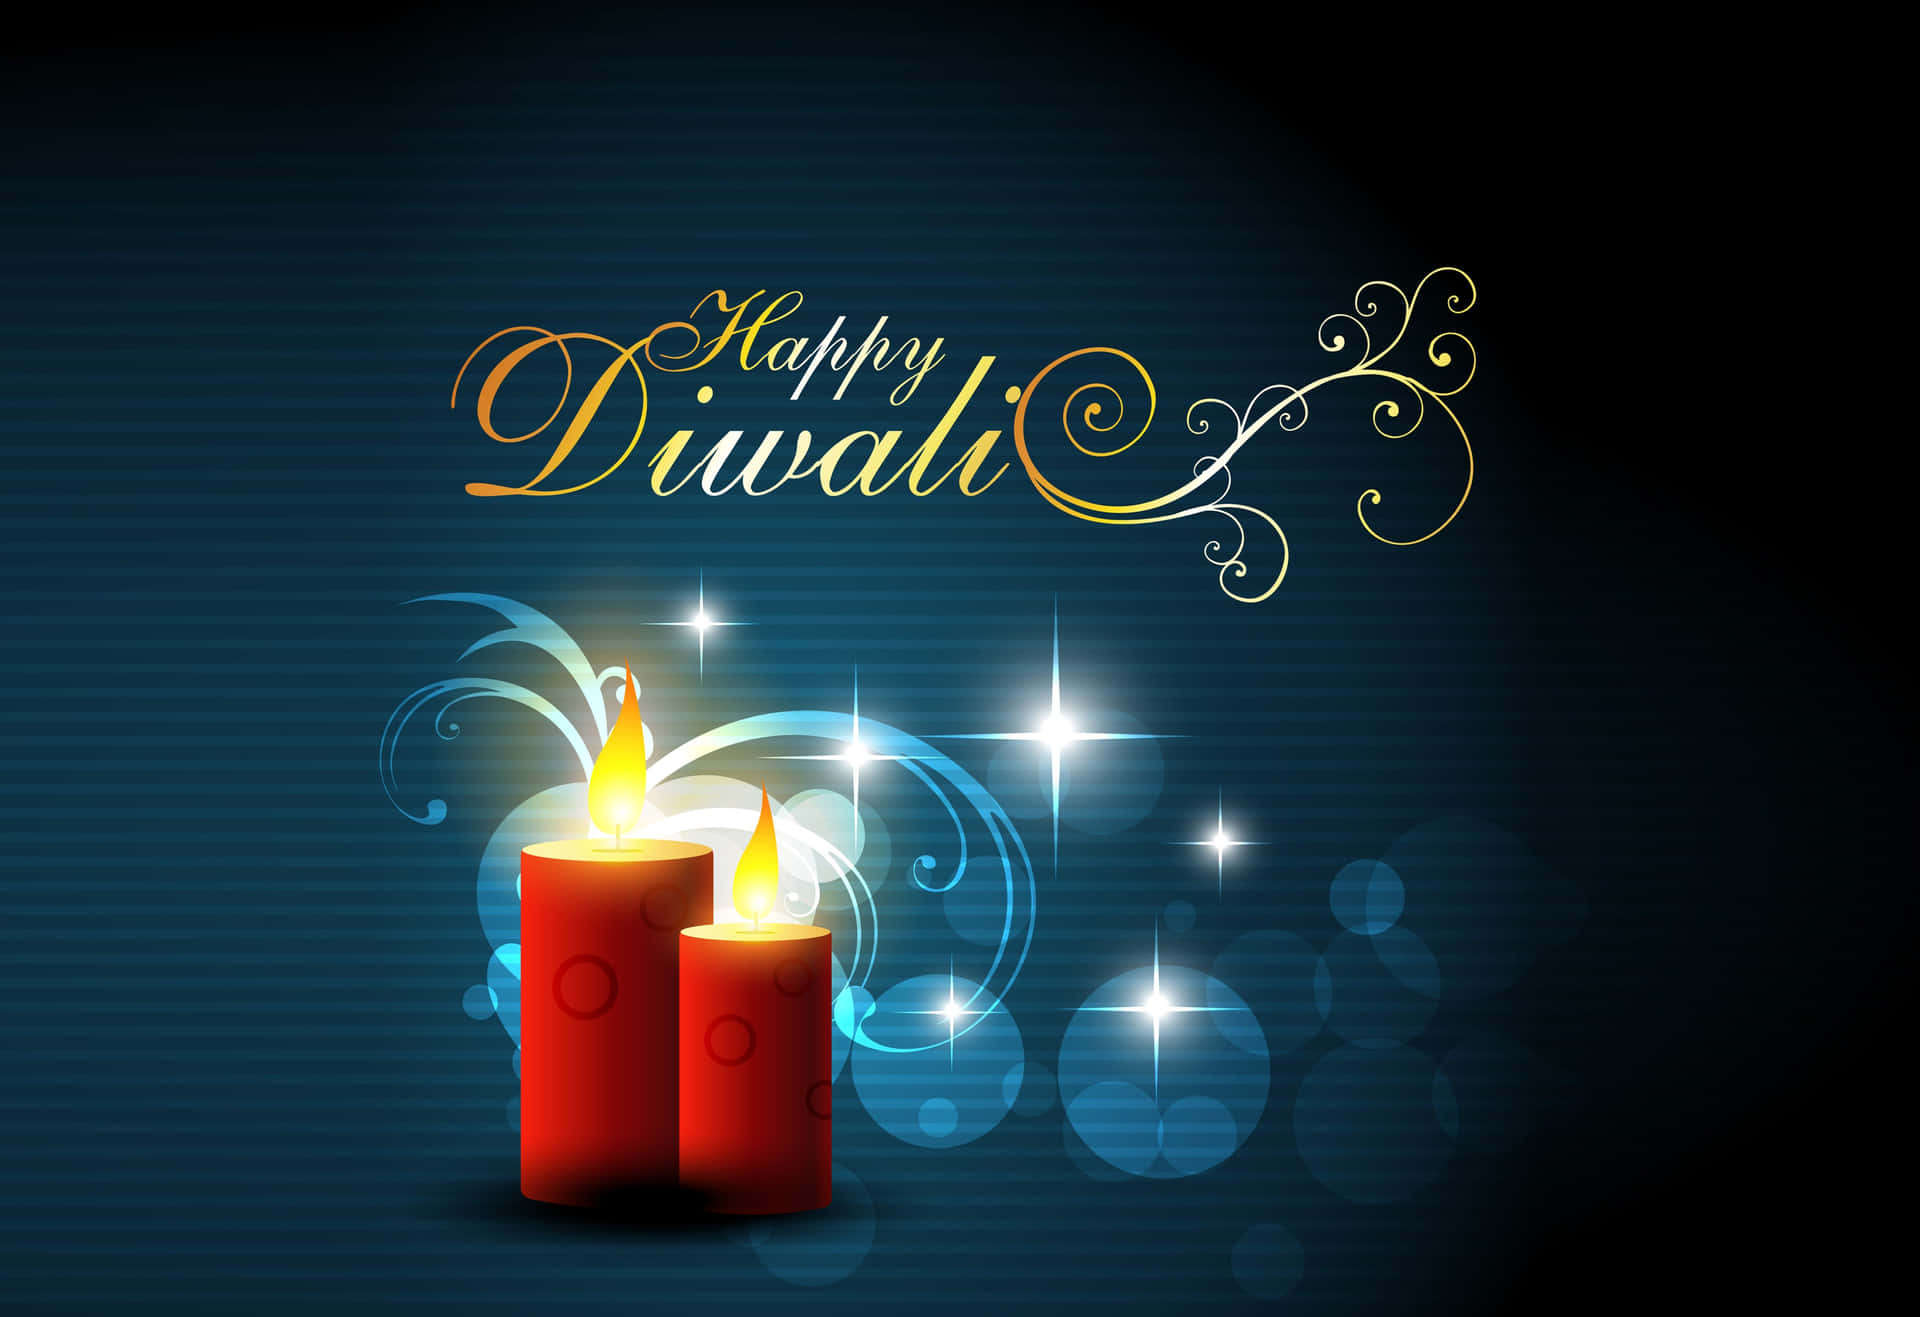 Wishing You A Joyous Diwali!